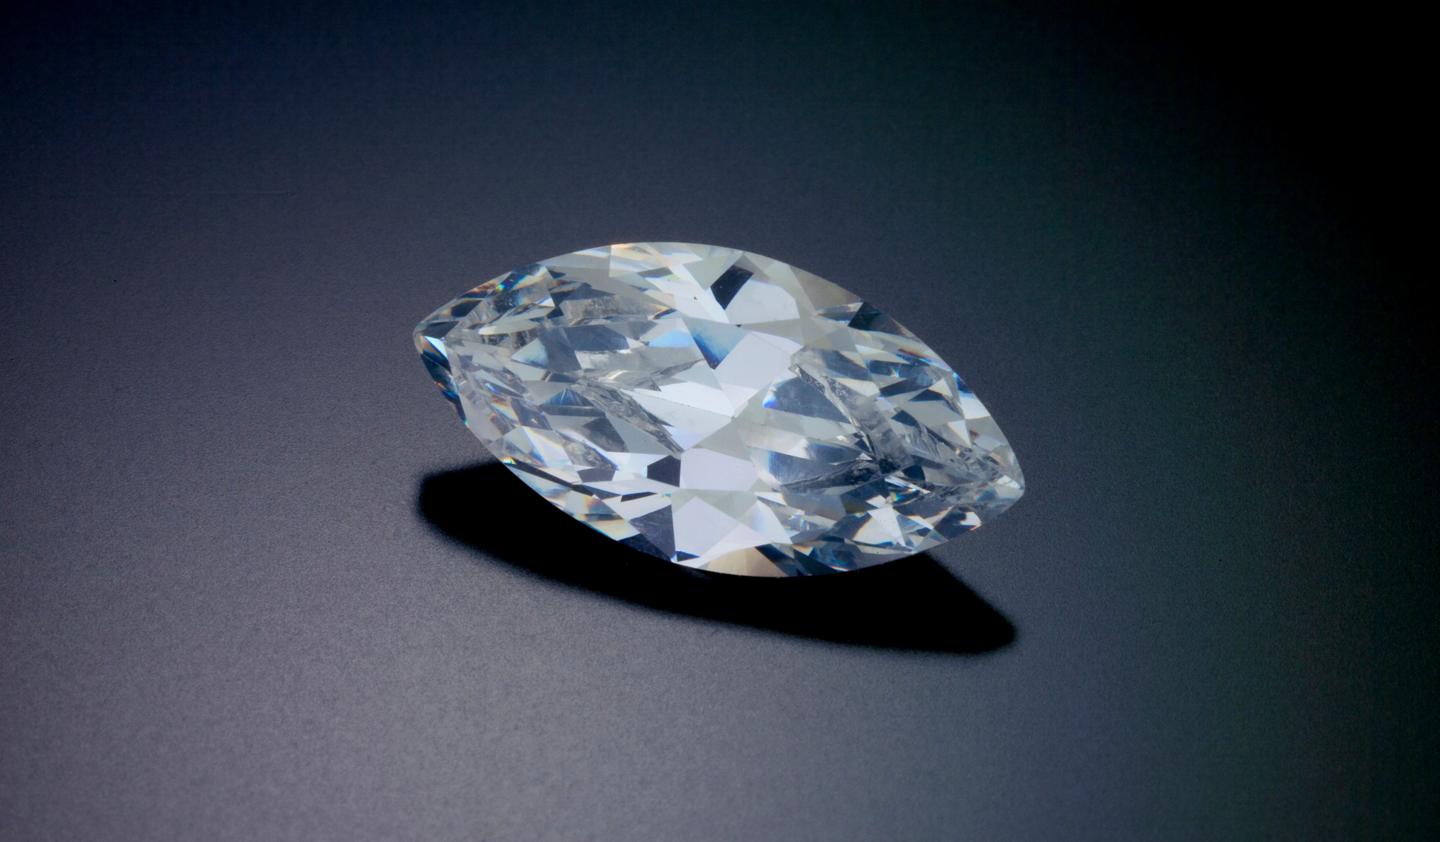 Le diamant marquise : ce que vous devez savoir sur cette coupe royale